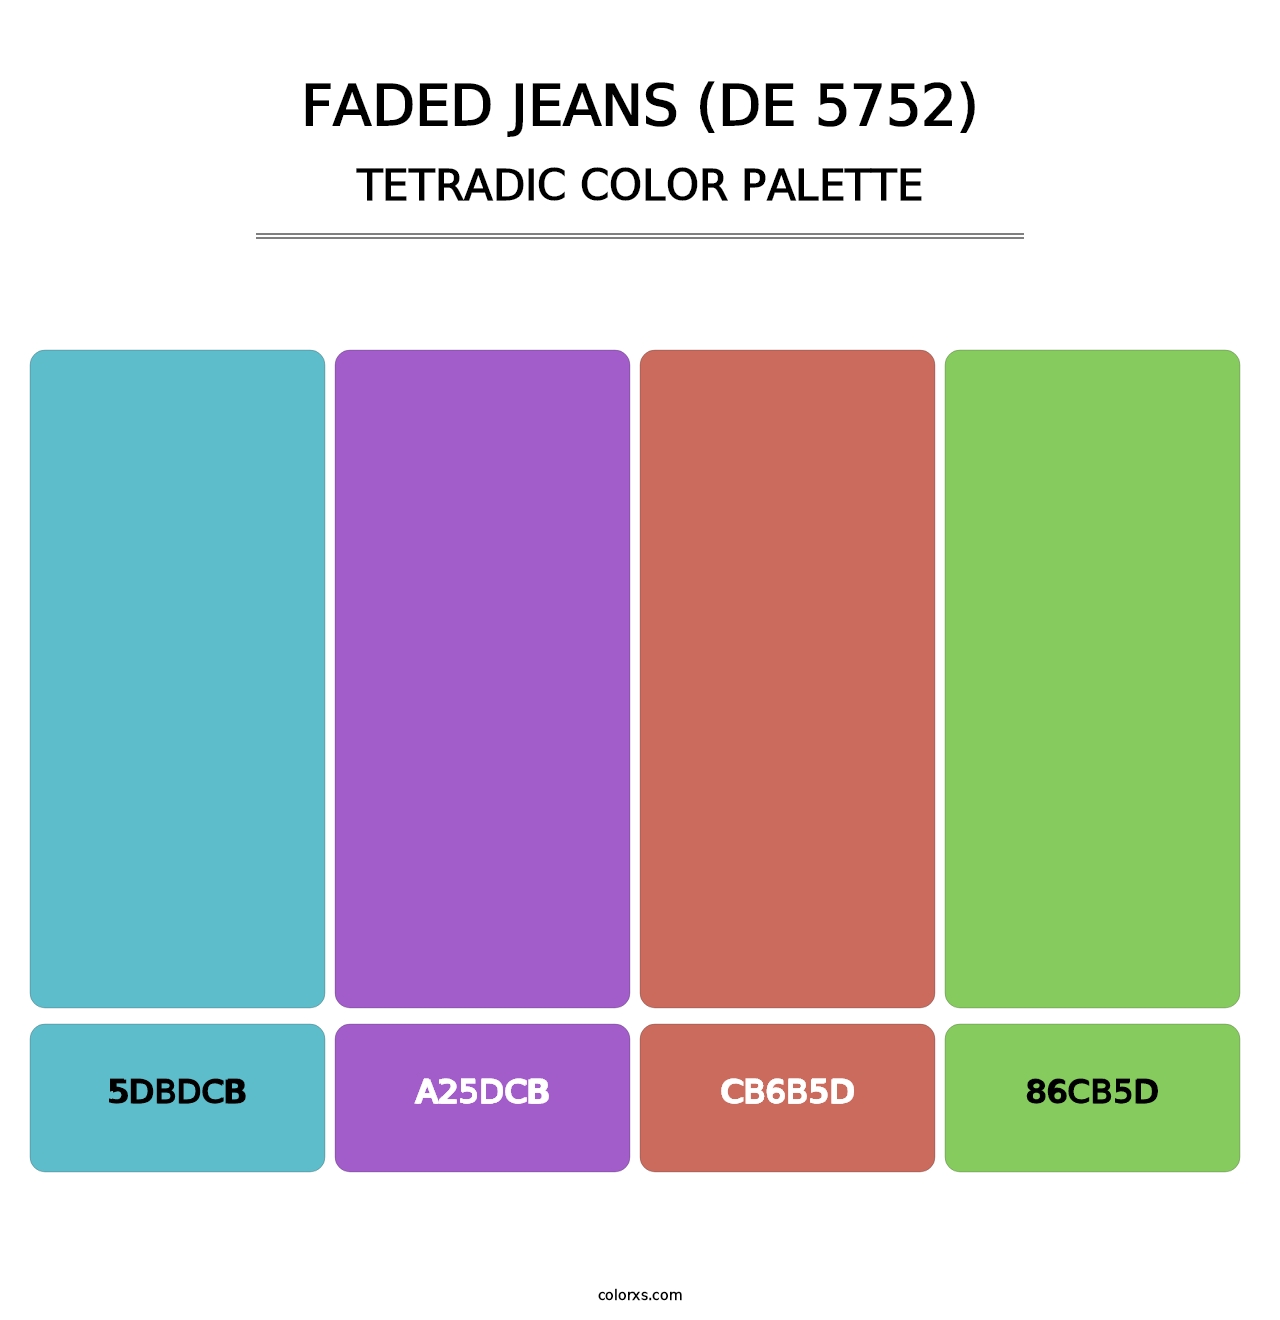 Faded Jeans (DE 5752) - Tetradic Color Palette